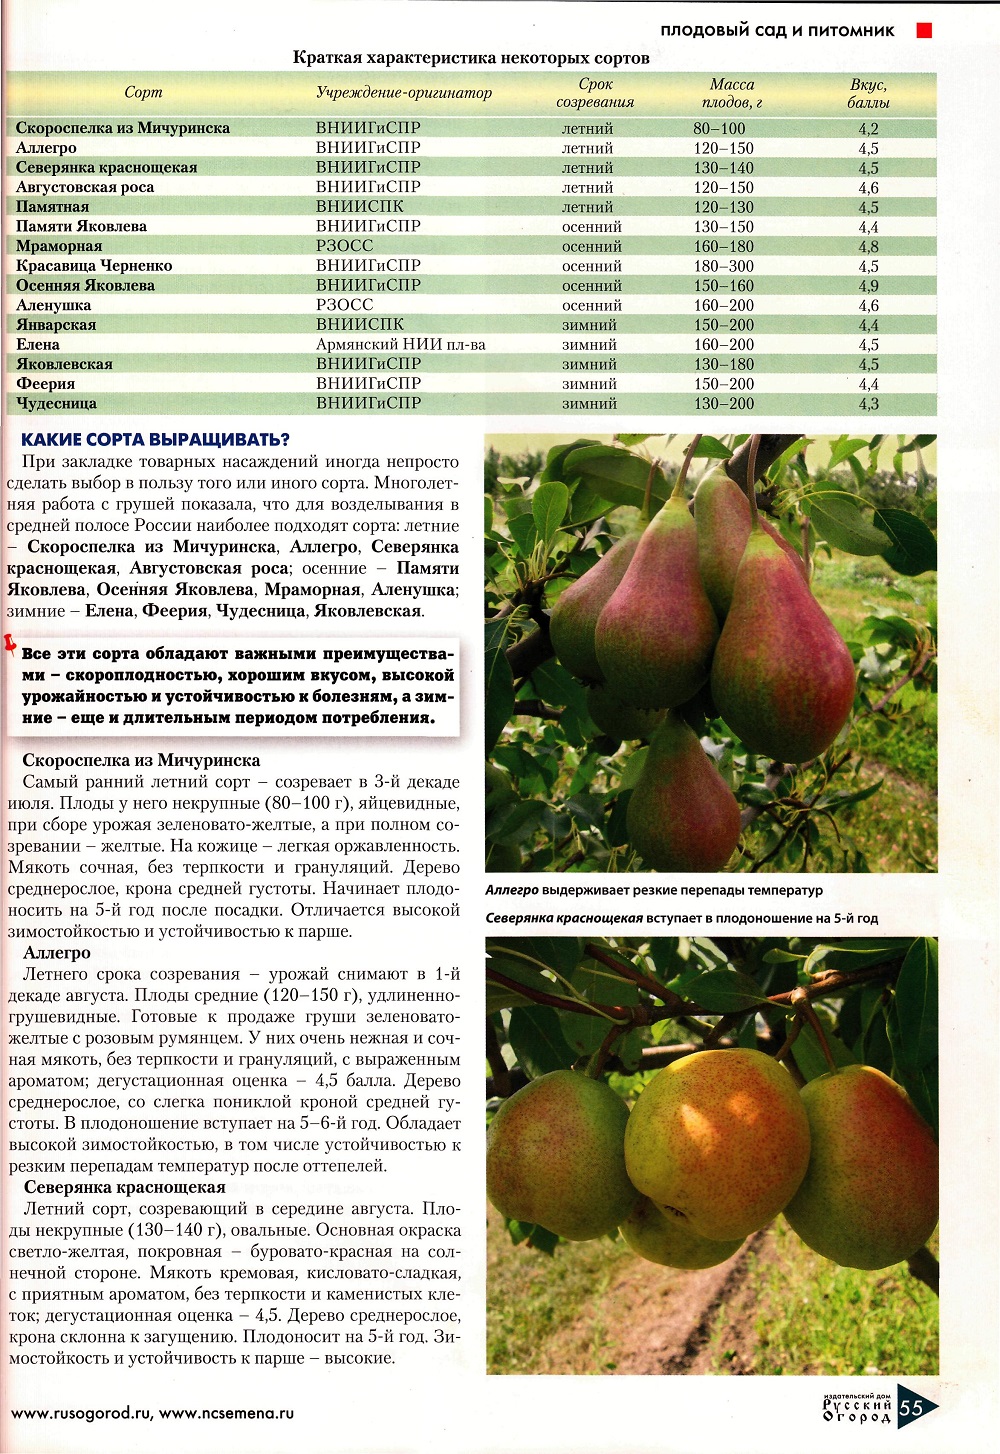 Груша лада: описание и характеристики, сроки созревания плодов, уход и выращивание